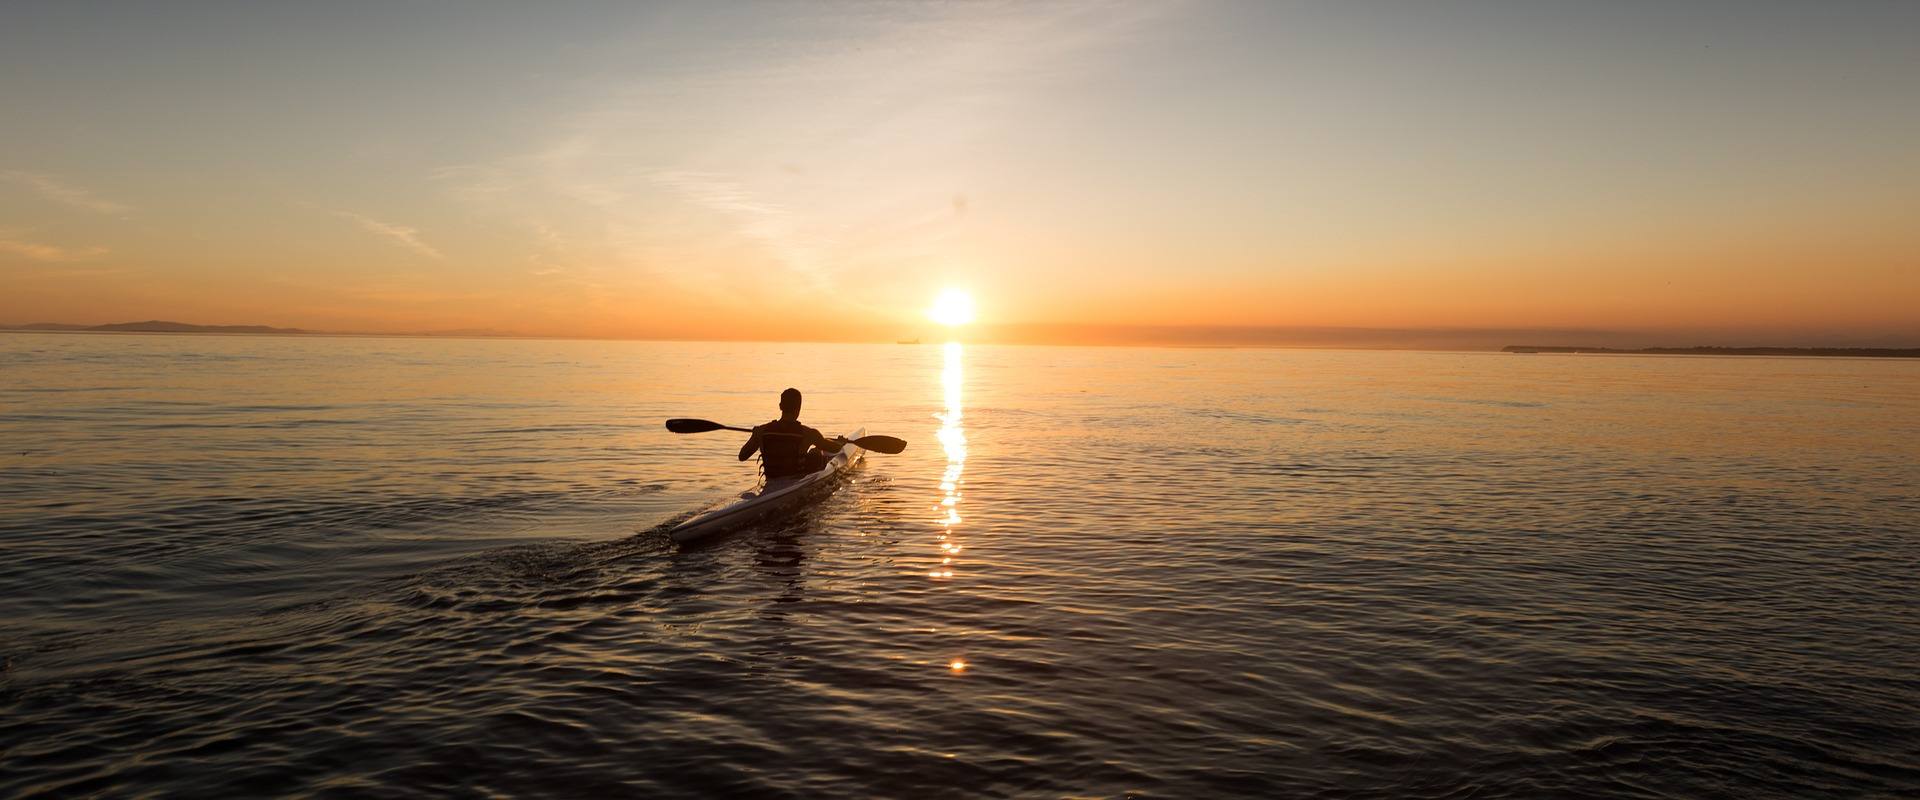 Persona in kayak che si dirige verso l'orizzonte con splendido tramonto